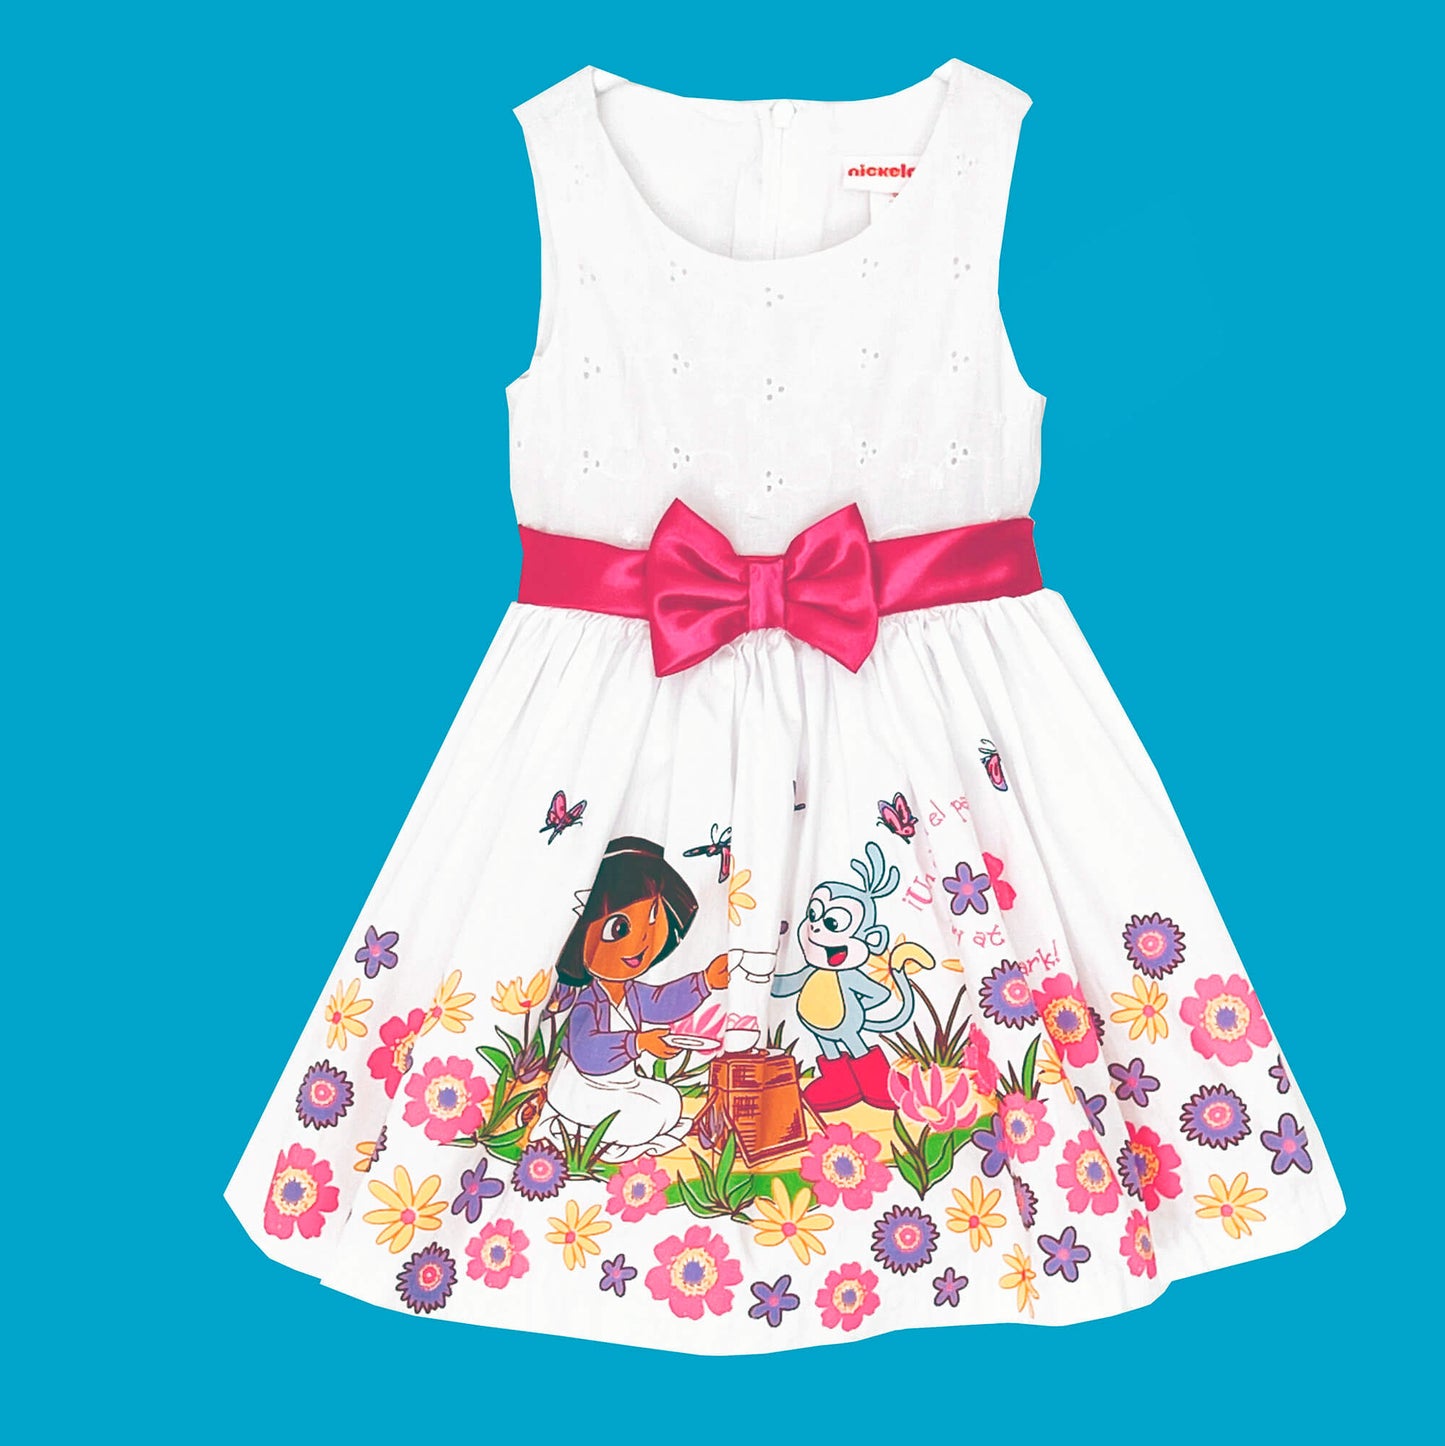 Dora-the-Explorer-White-Floral-Cotton-Party-Dress-12M.-Pink-Bow.-Shop-eBargainsAndDeal.com